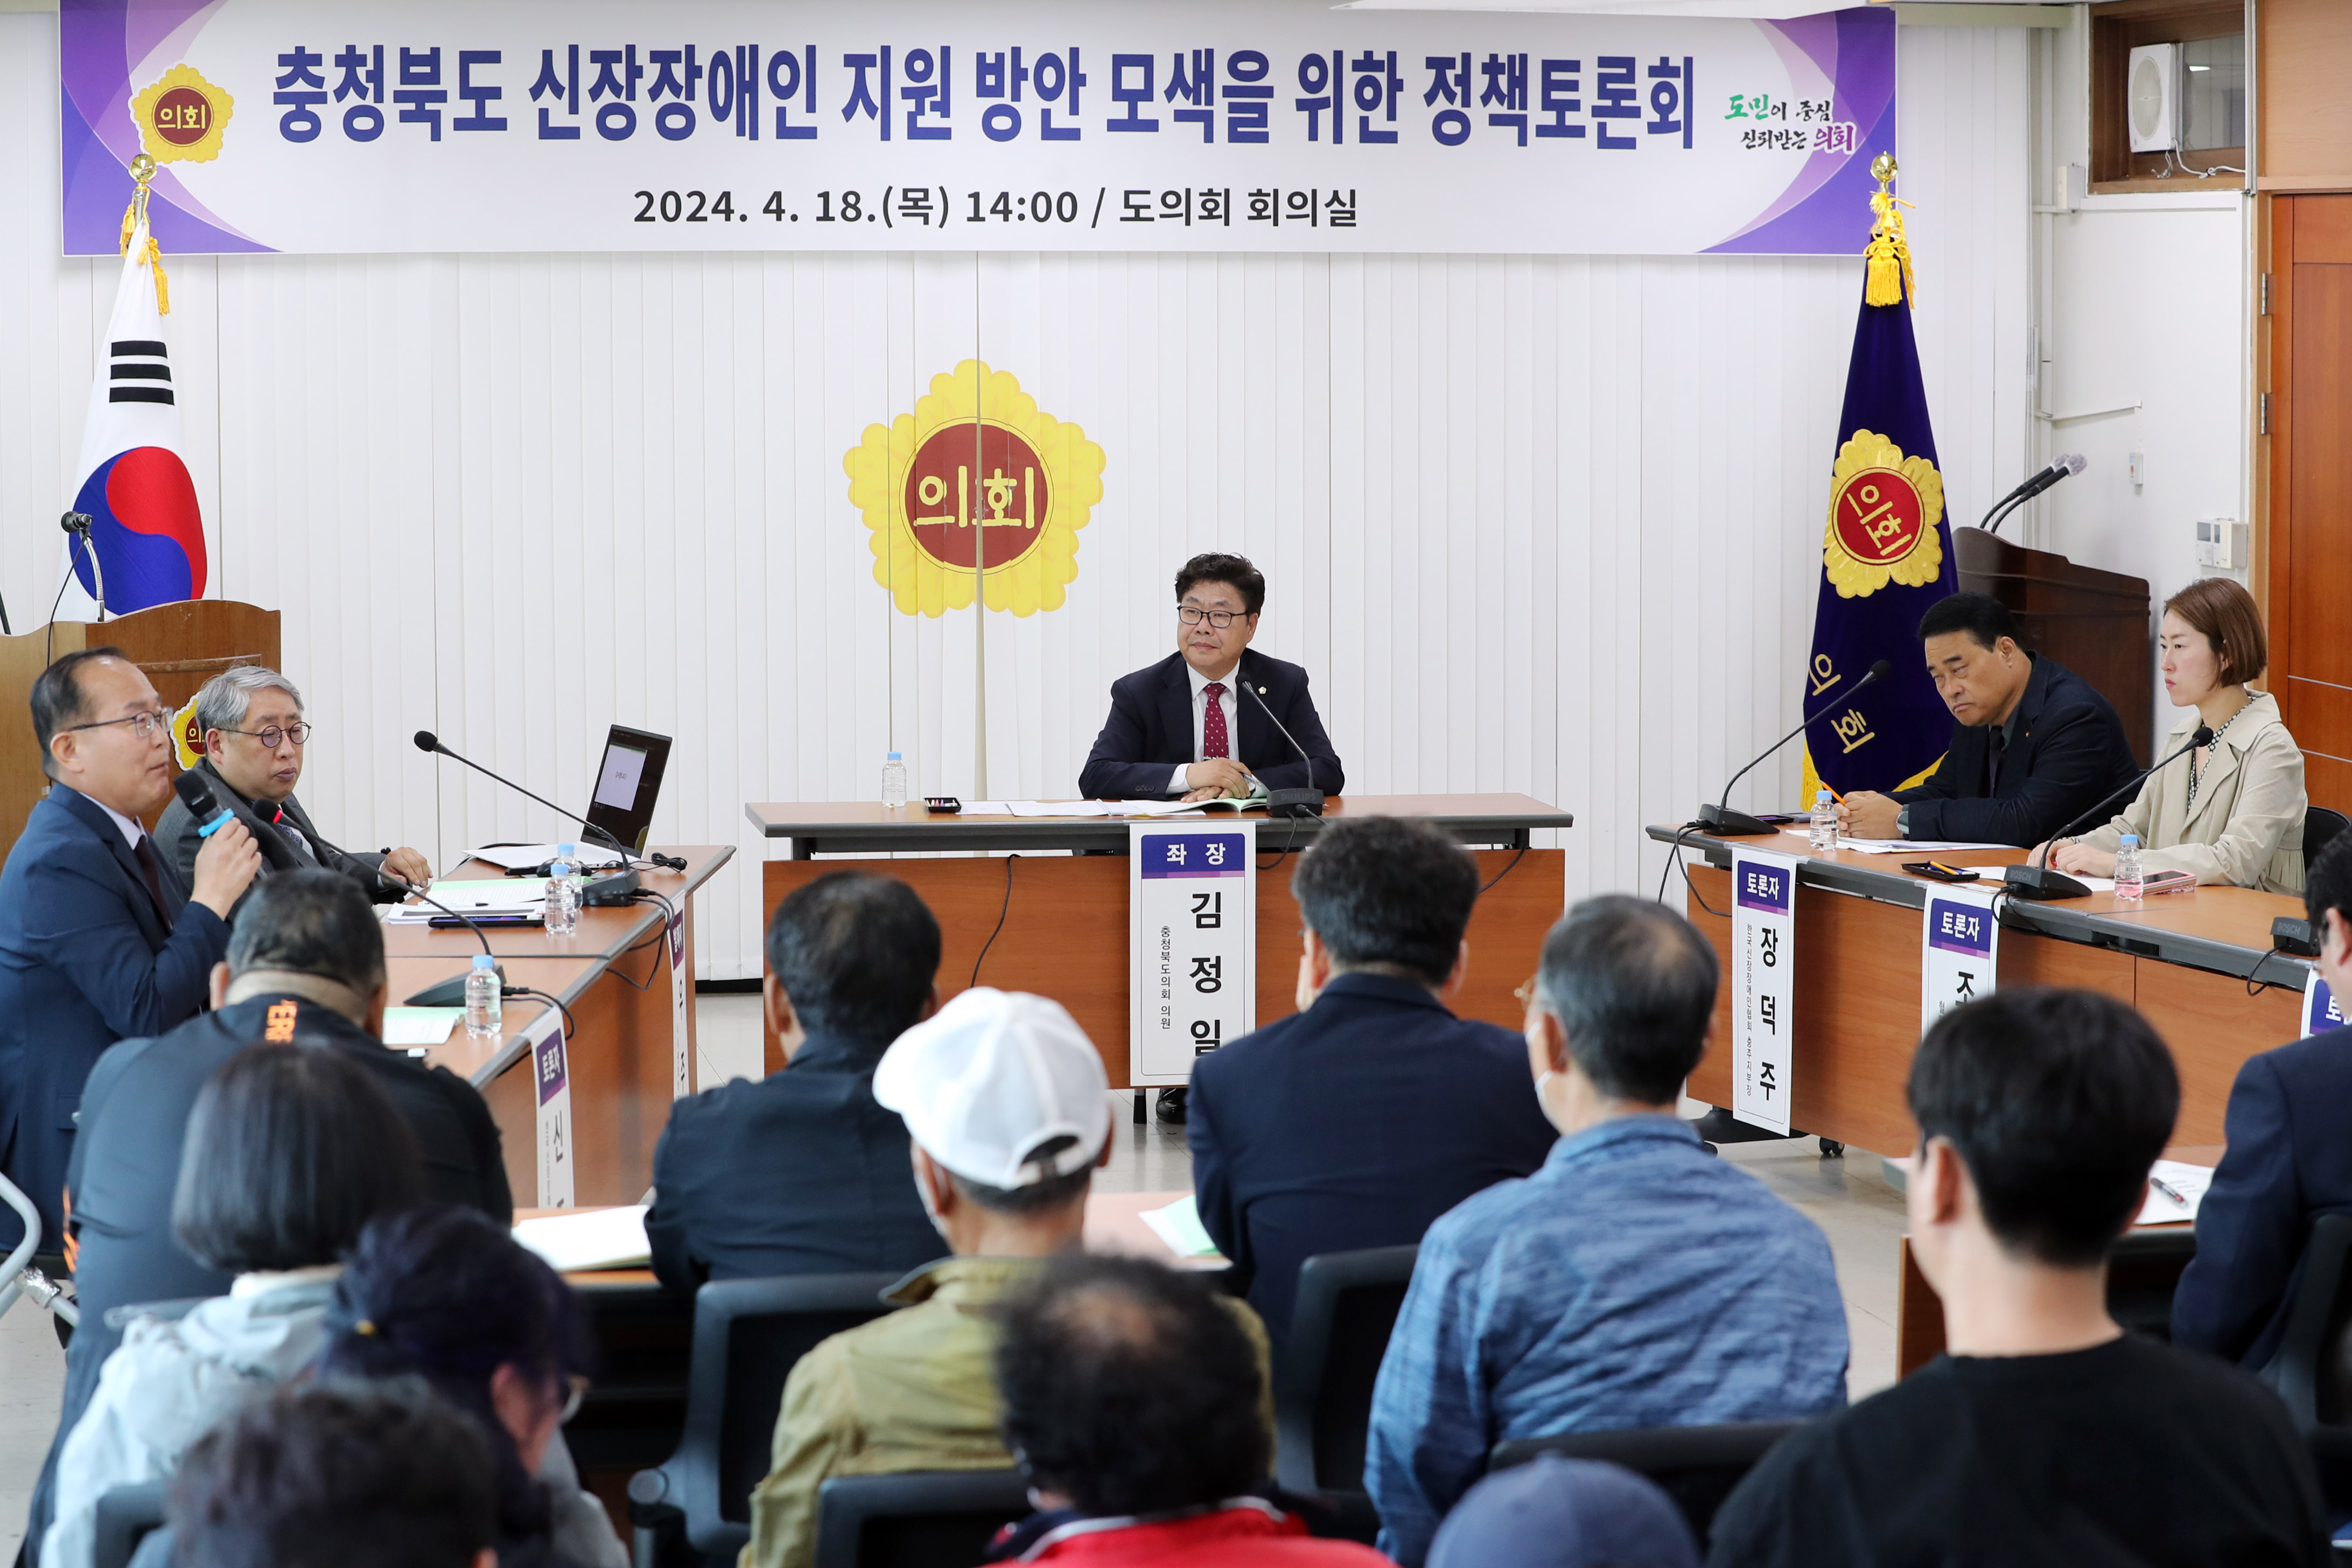 정복위, 충청북도 신장장애인 지원 방안 모색을 위한 정책토론회 개최 - 2